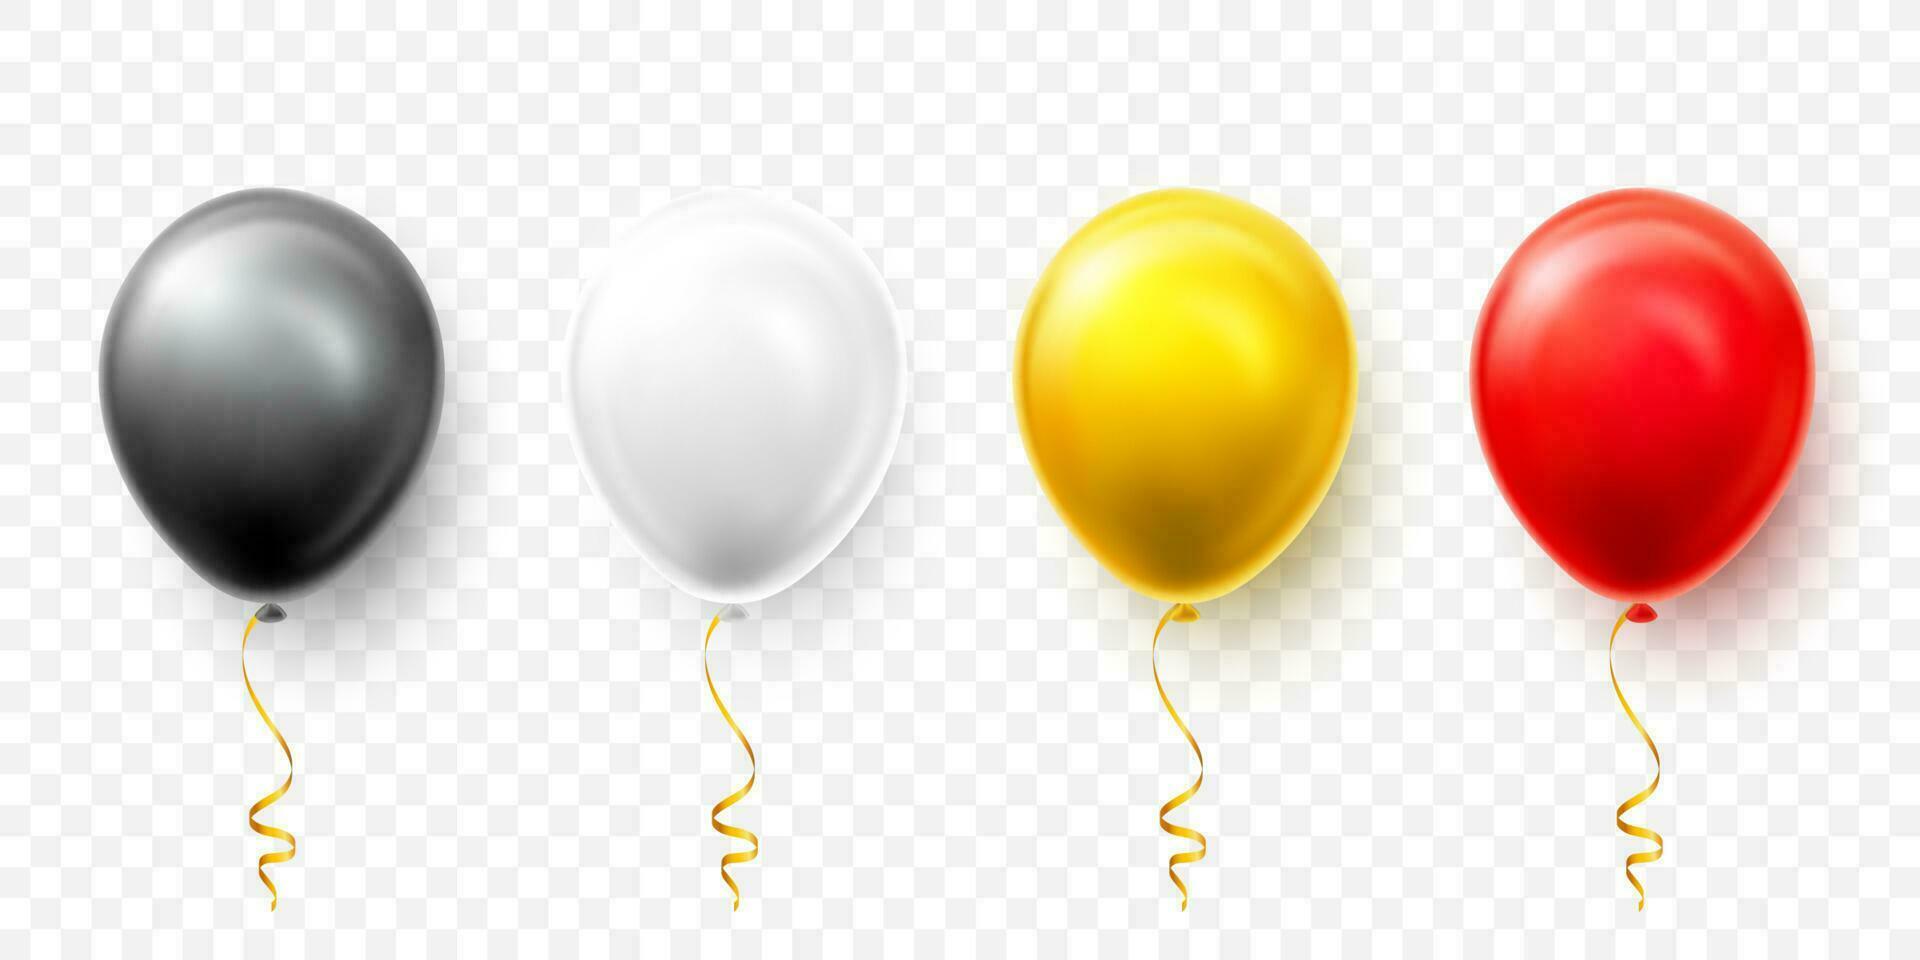 realista preto, branco, vermelho e ouro balões com sombra. brilho hélio balão para casamento, aniversário, festas. festival decoração. vetor ilustração